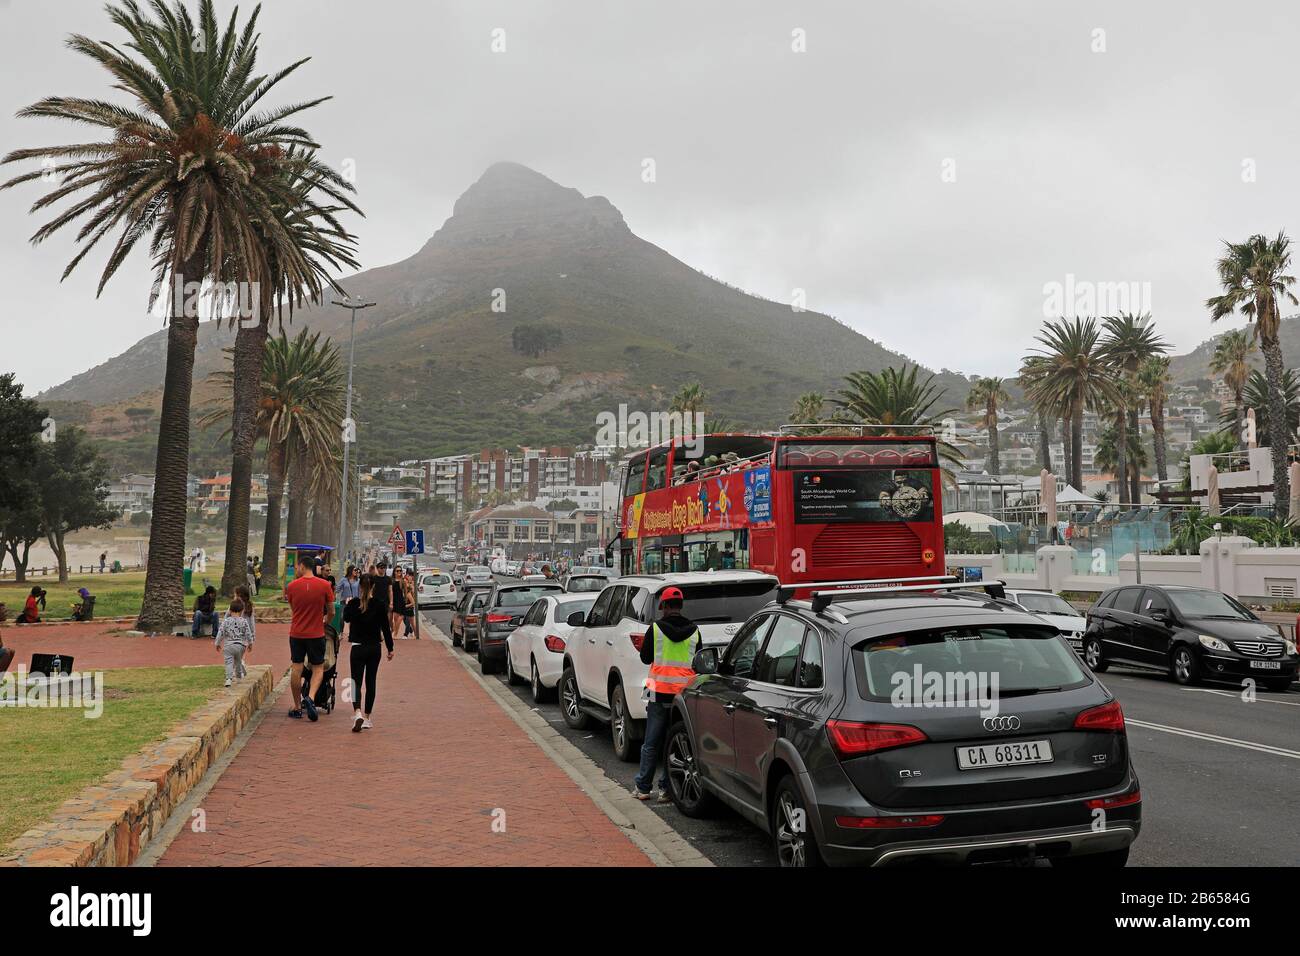 Bus touristique rouge à Victoria Road Camps Bay, Cape Town, Afrique du Sud. Banque D'Images